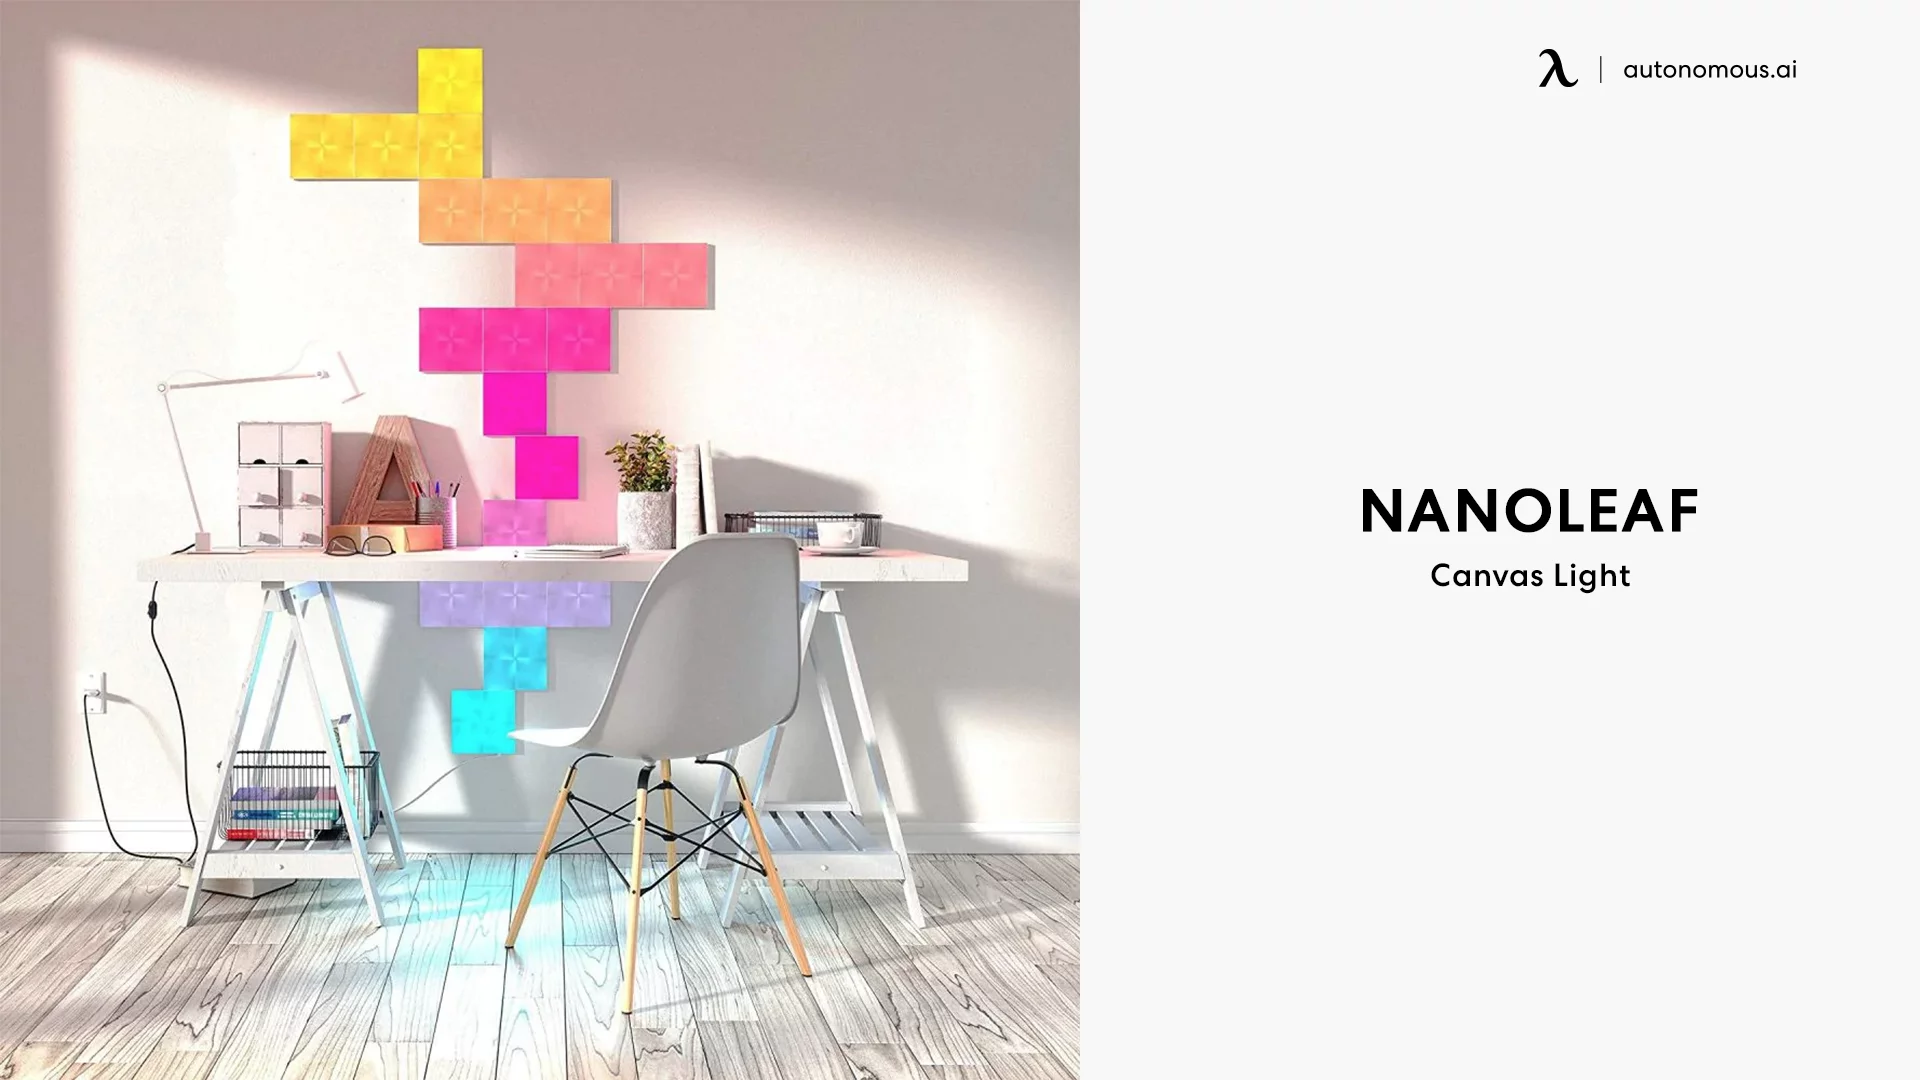 Nanoleaf Canvas home office lighting